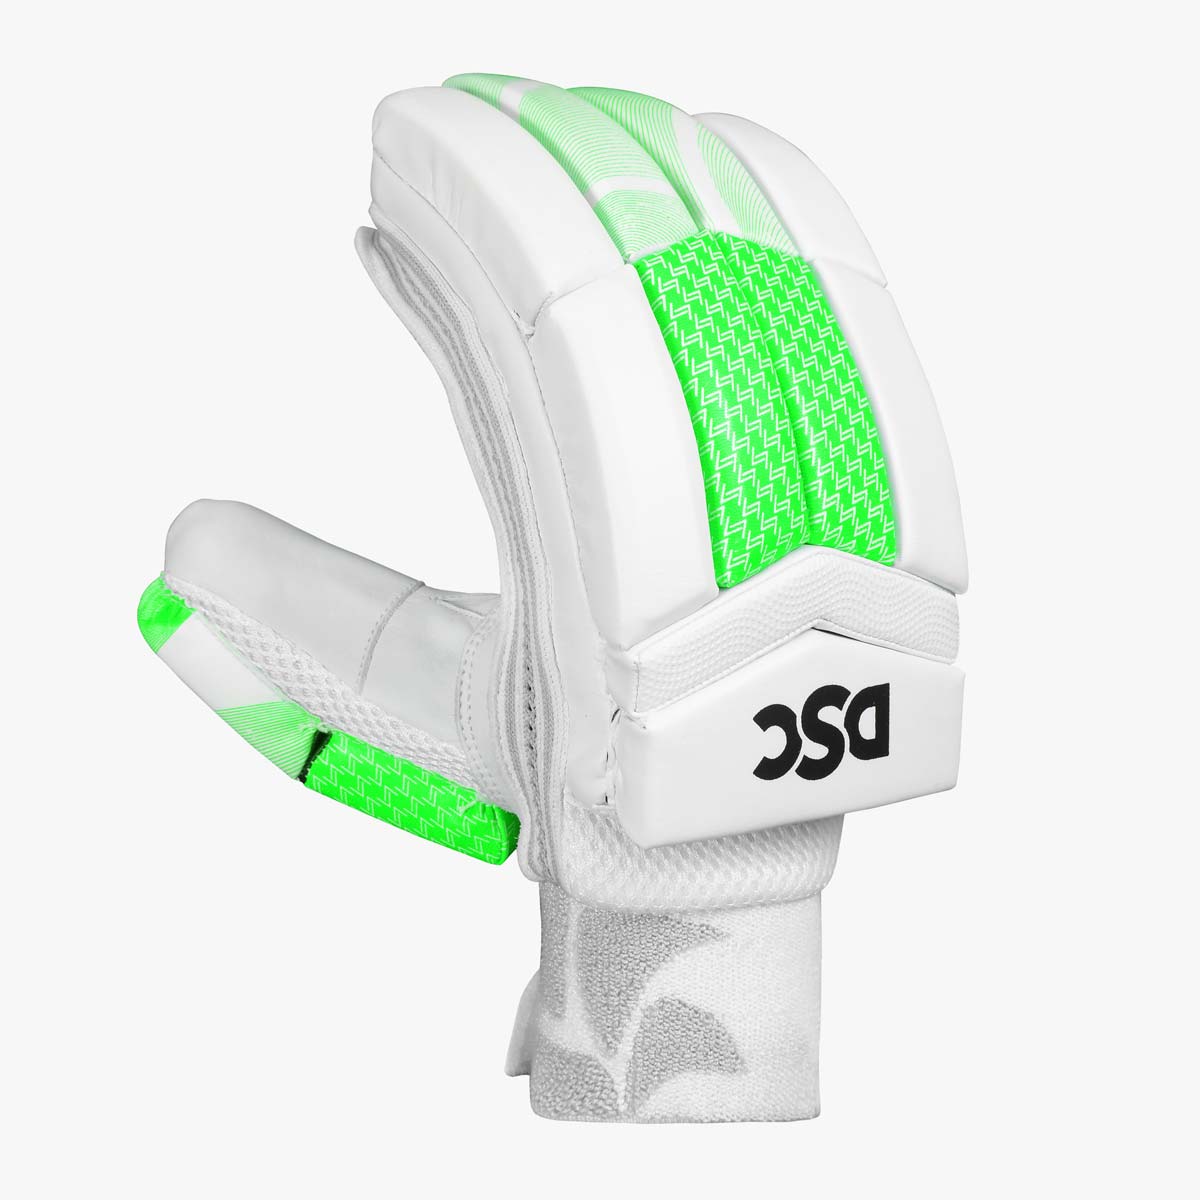 DSC-Spliit-44-Batting-Gloves